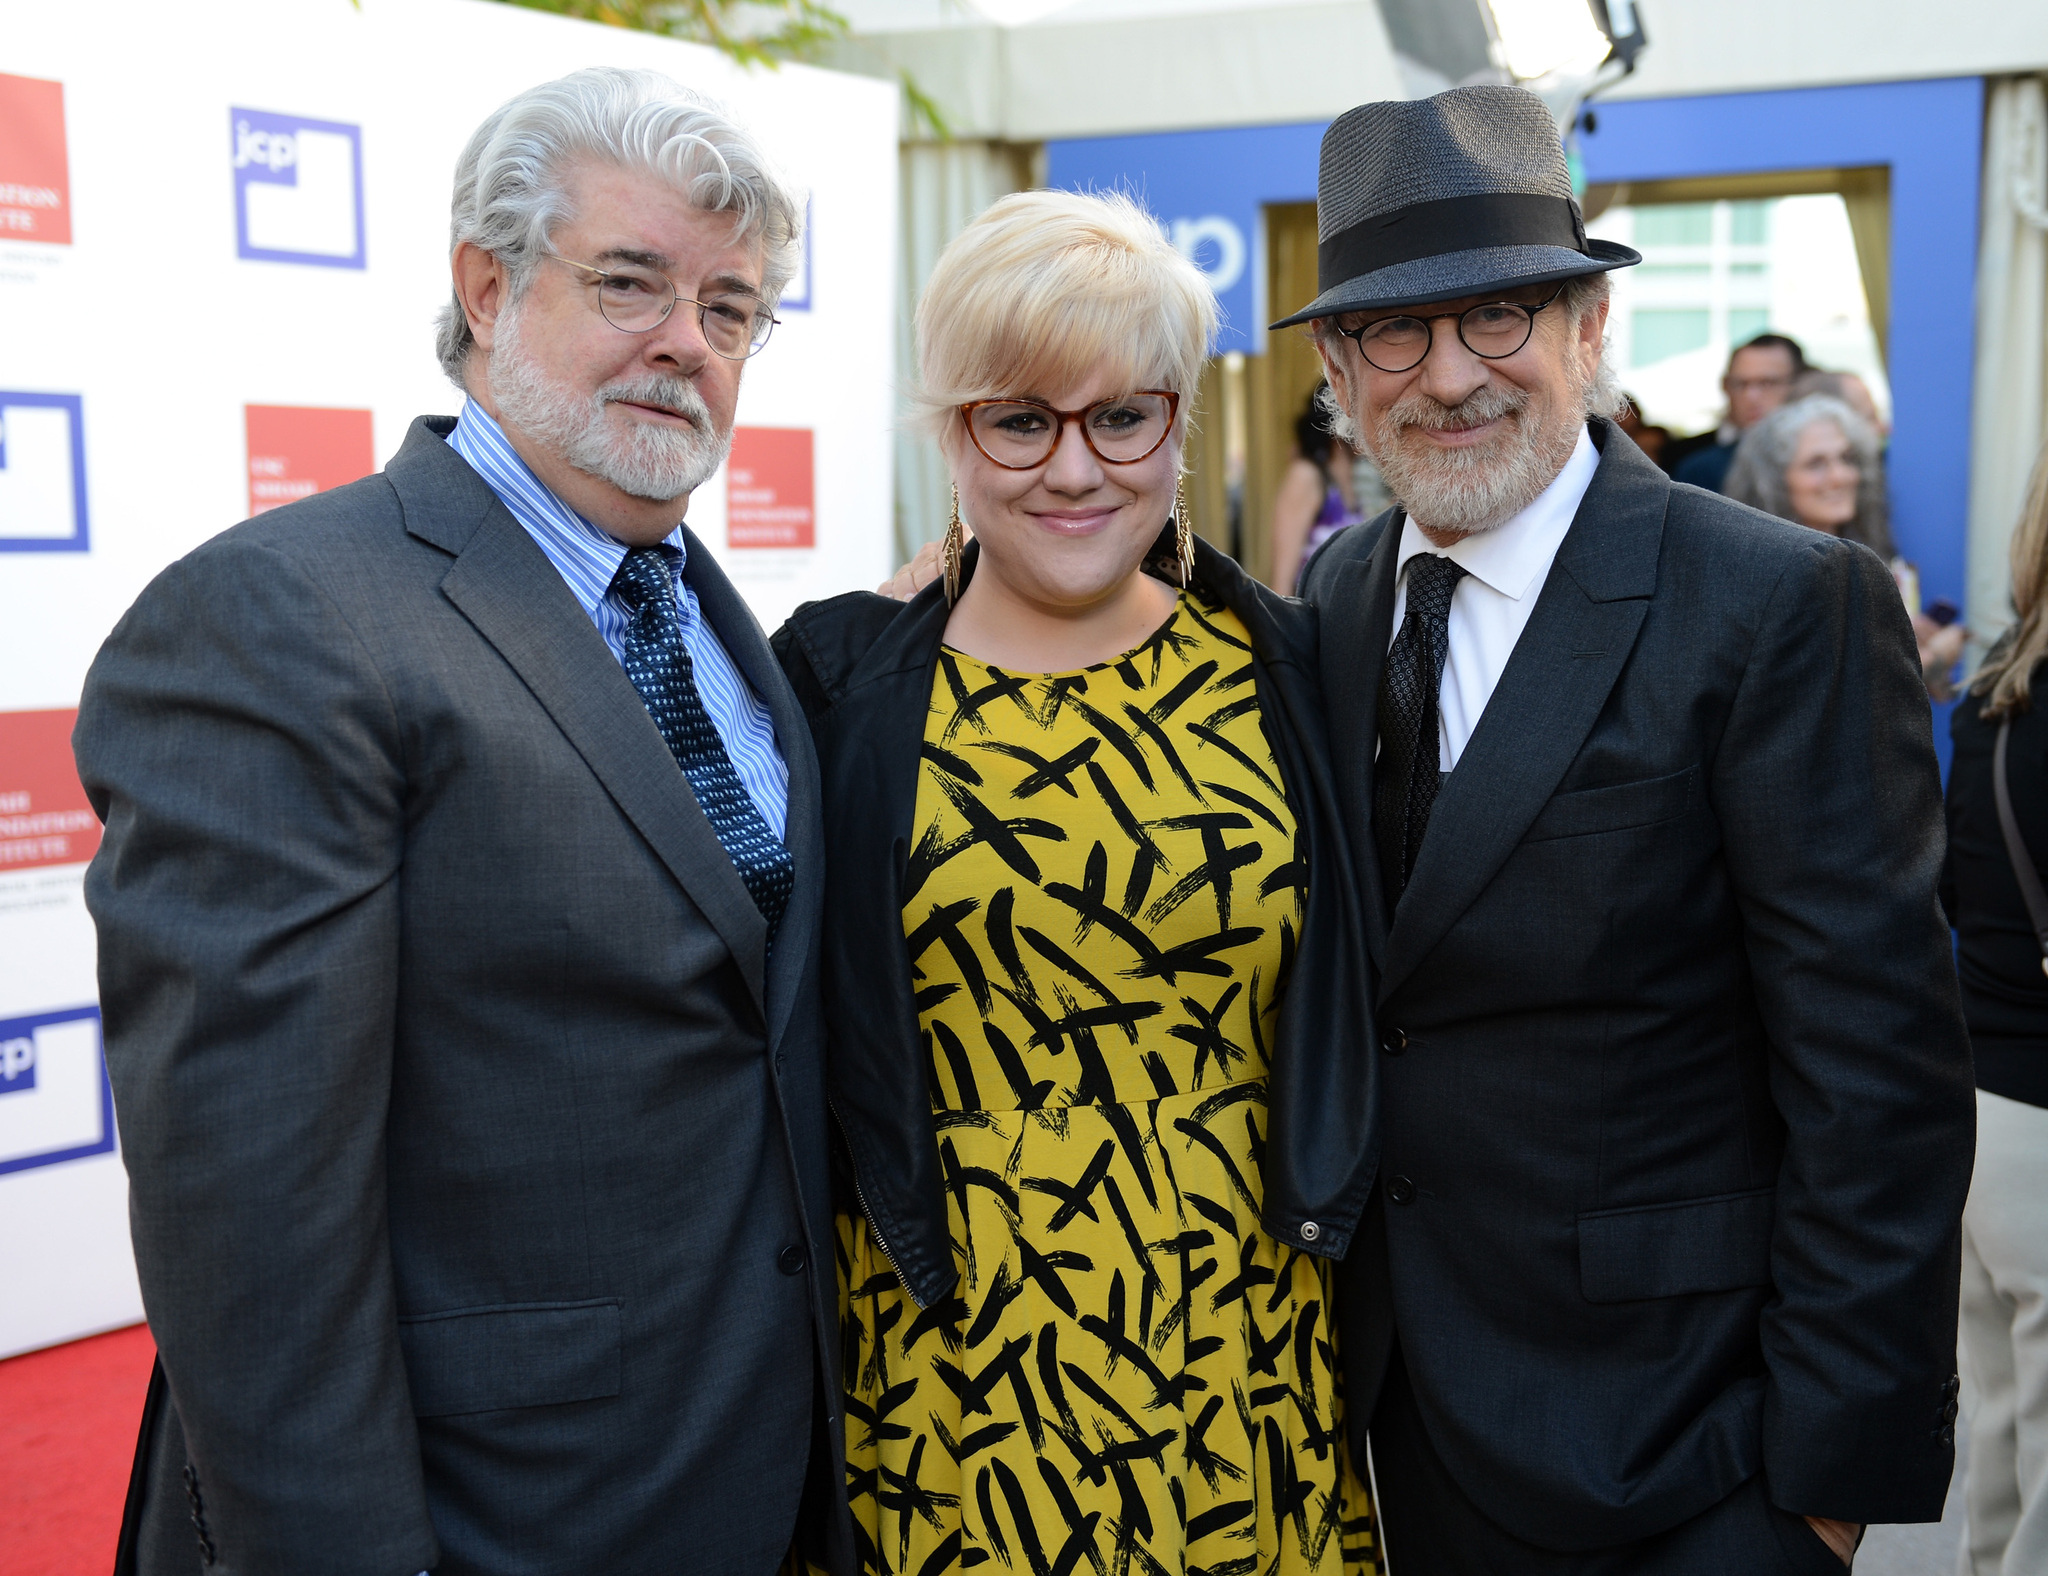 George Lucas, Steven Spielberg and Katie Lucas